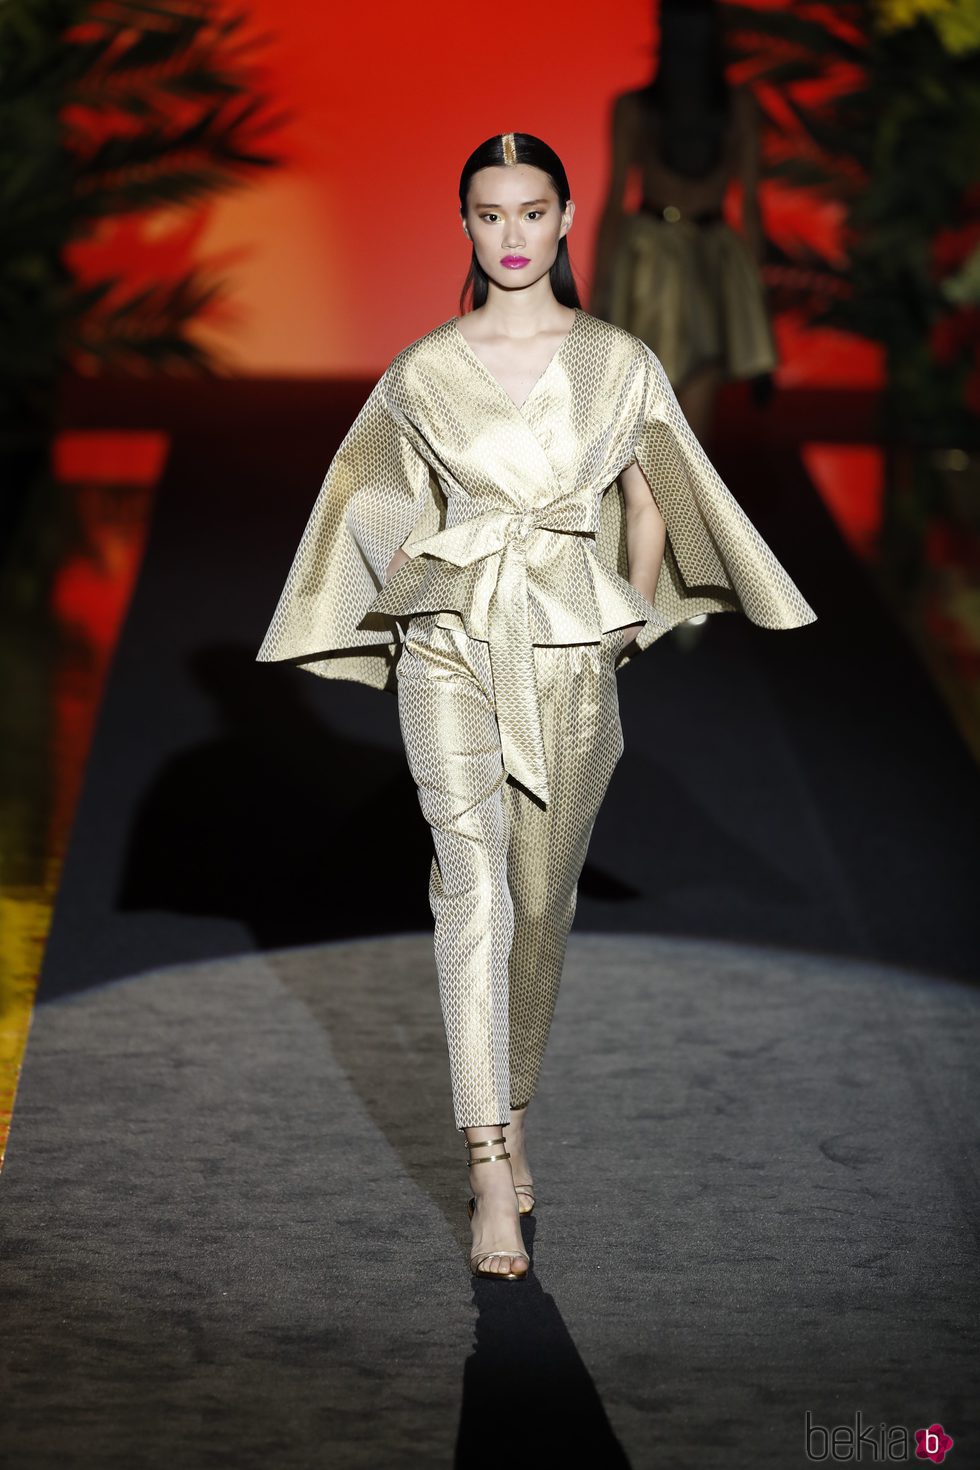 Traje con estampado japonés de Hannibal Laguna de la coleción Orient Bloom en la Madrid Fashion Week